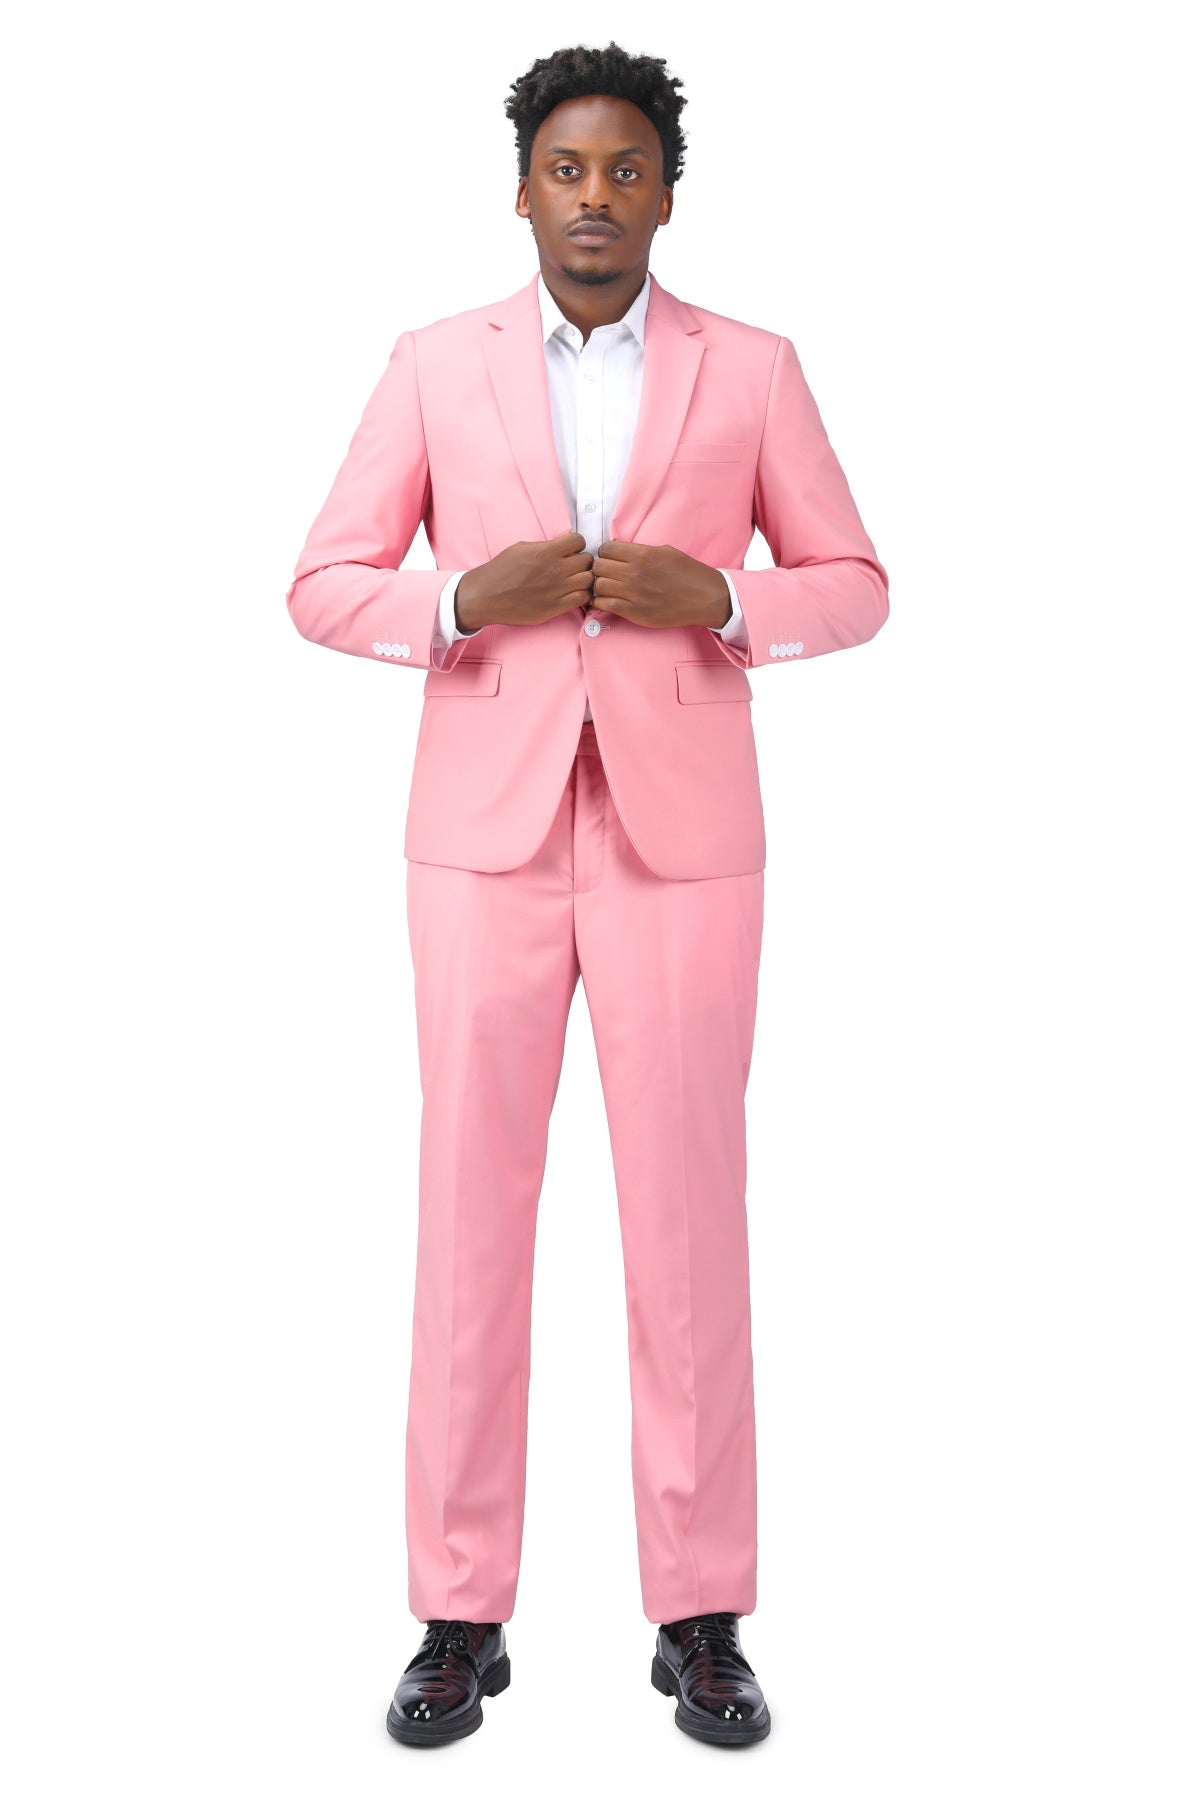 Men Suit 2 Piece Burgundy Formal Slim Fit Suit New Arrival - Etsy | Wedding  suits men, Purple suits, Wedding suits